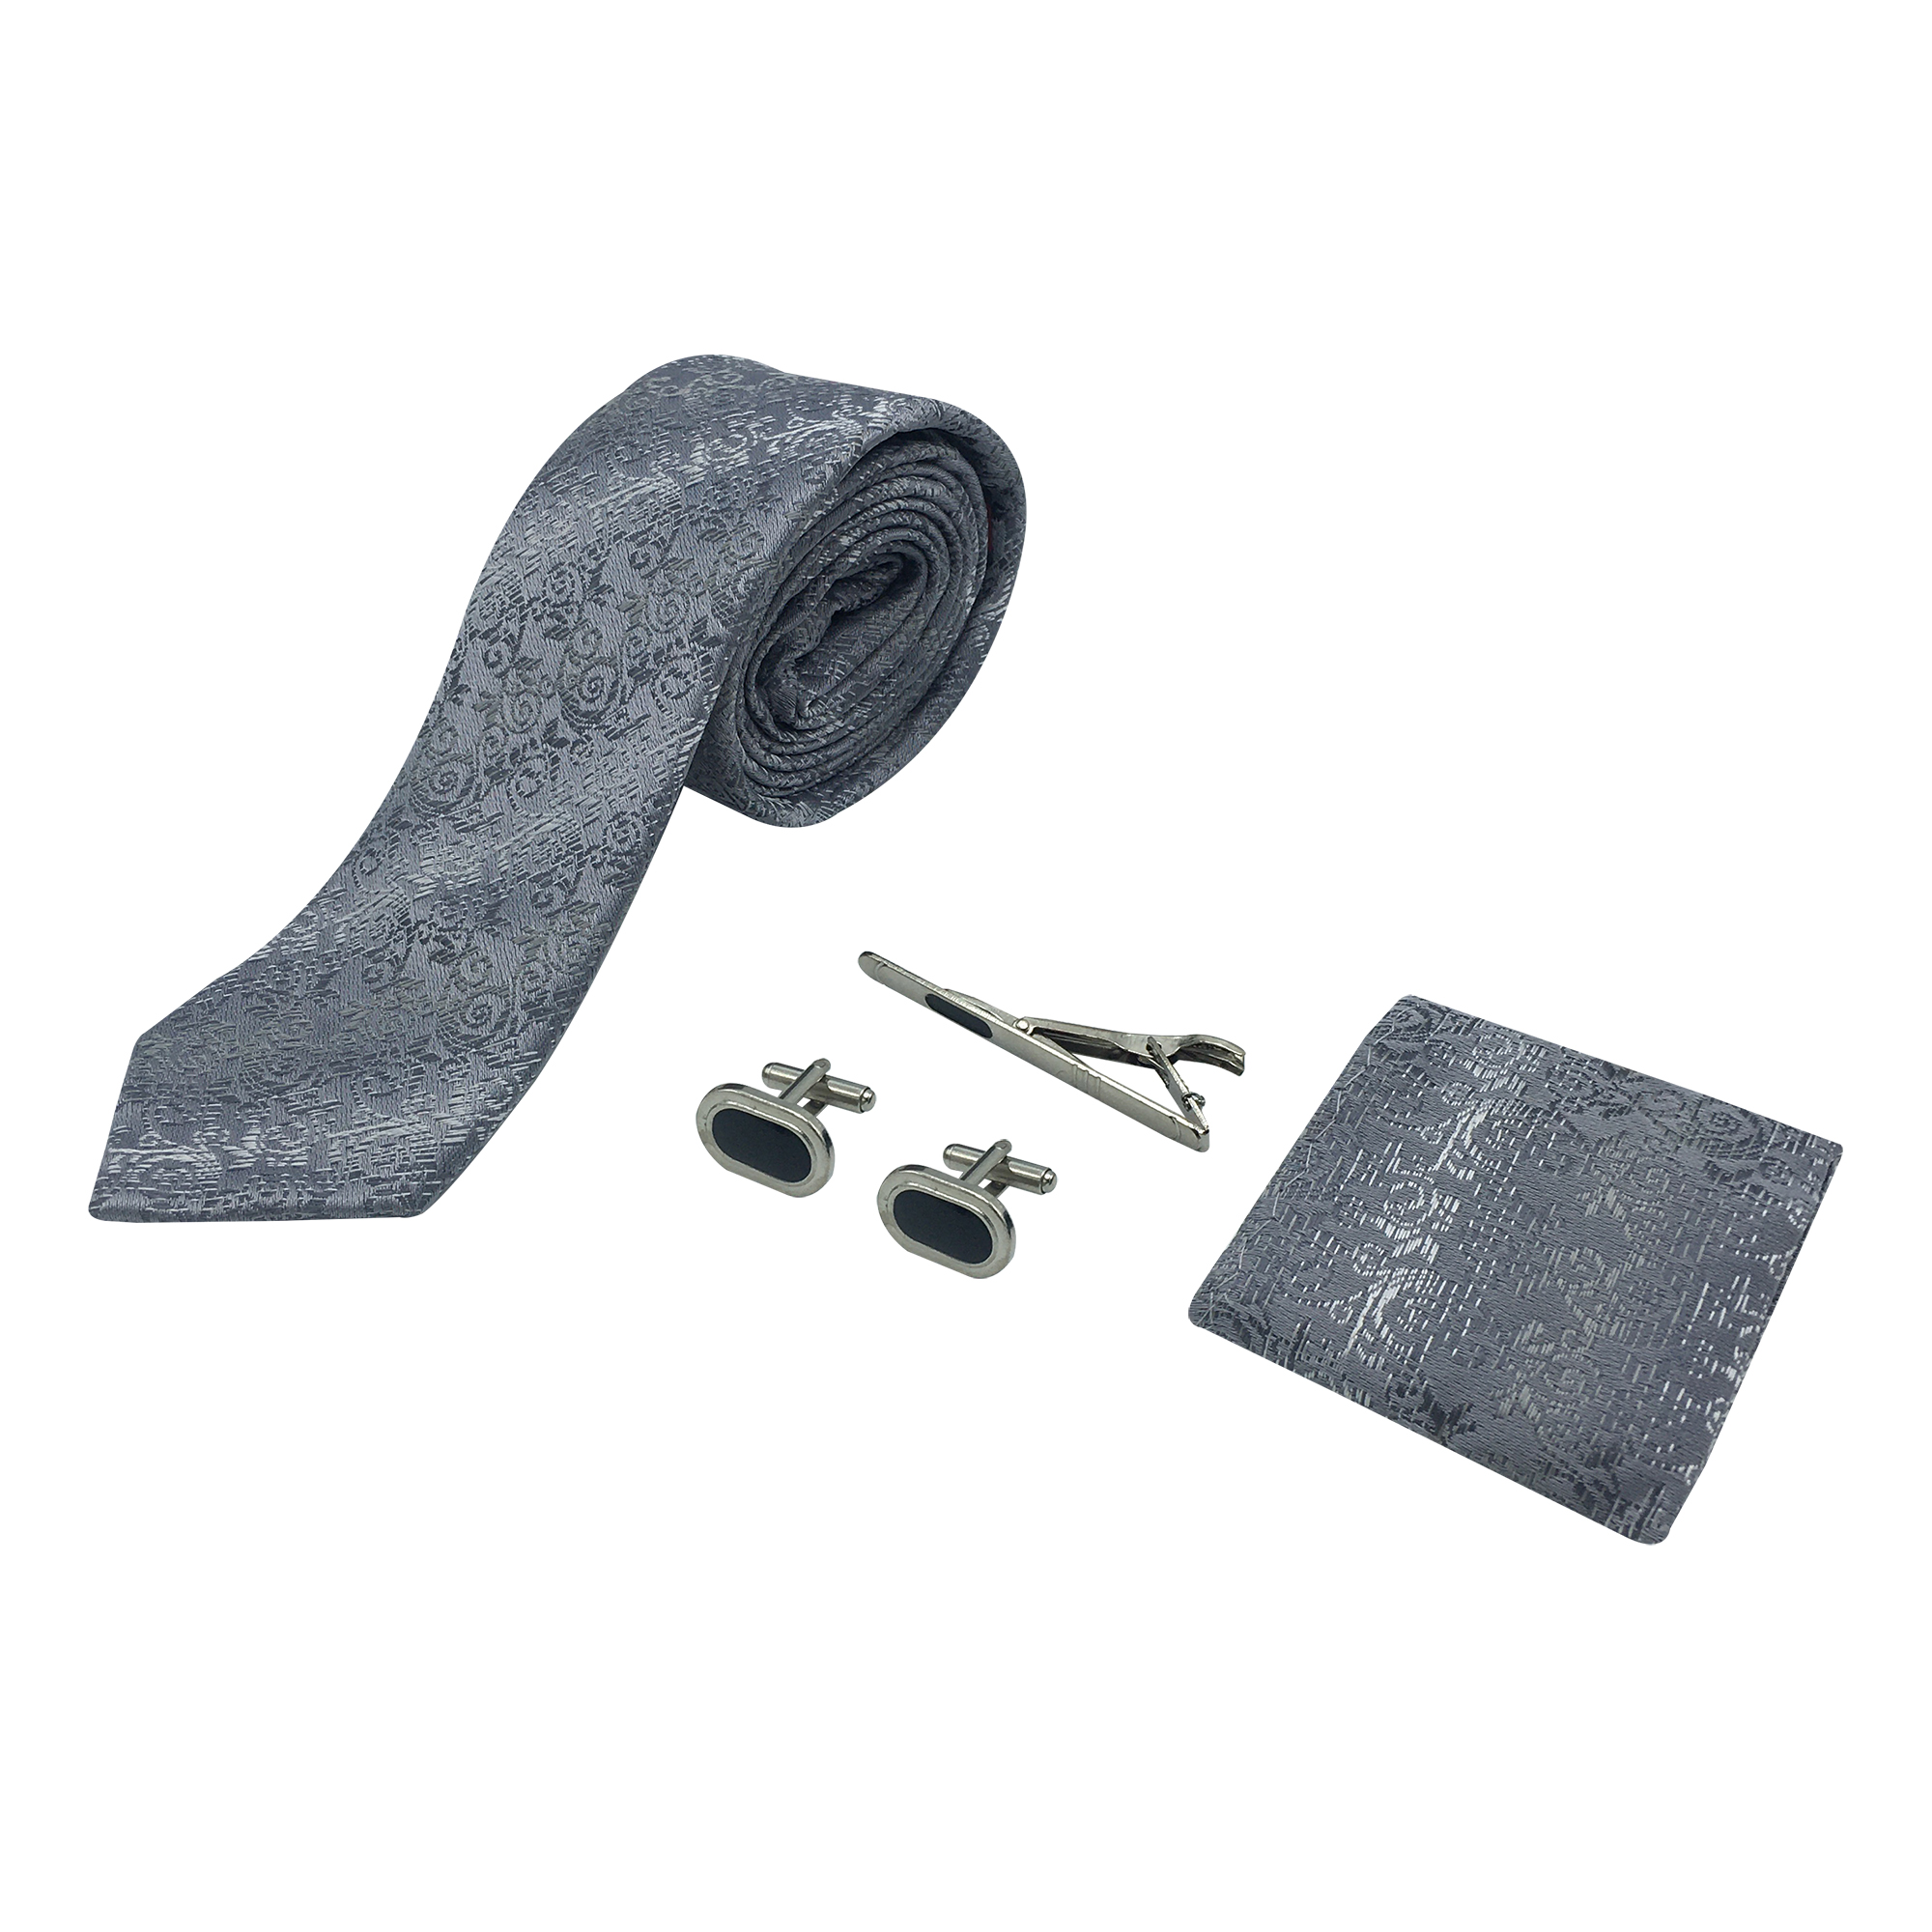 ست کراوات و گیره کراوات و دستمال جیب و دکمه سردست مردانه مدل 1717